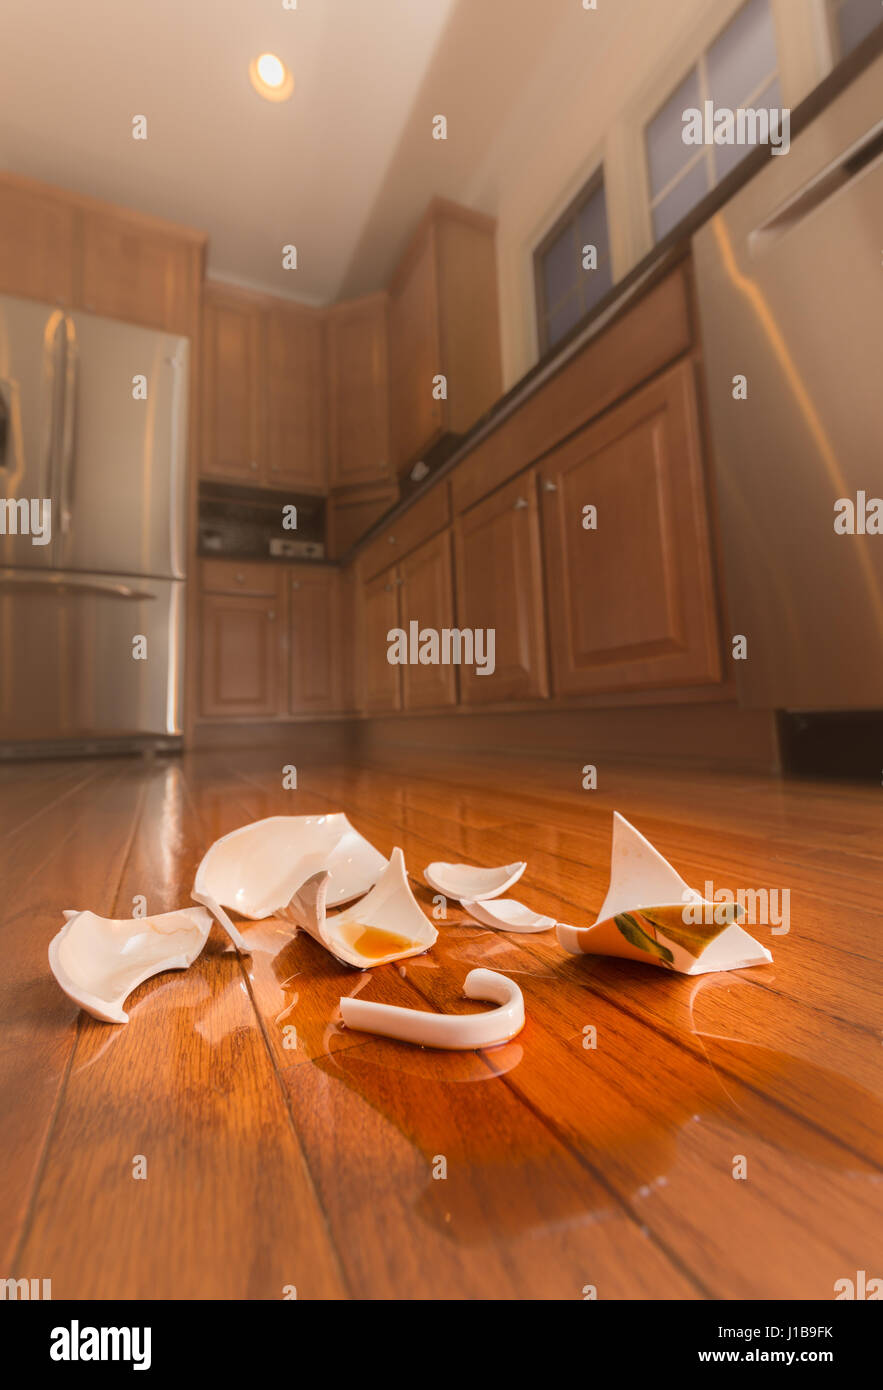 Rotture di tazza di caffè sul pavimento della cucina moderna - la violenza domestica concept Foto Stock